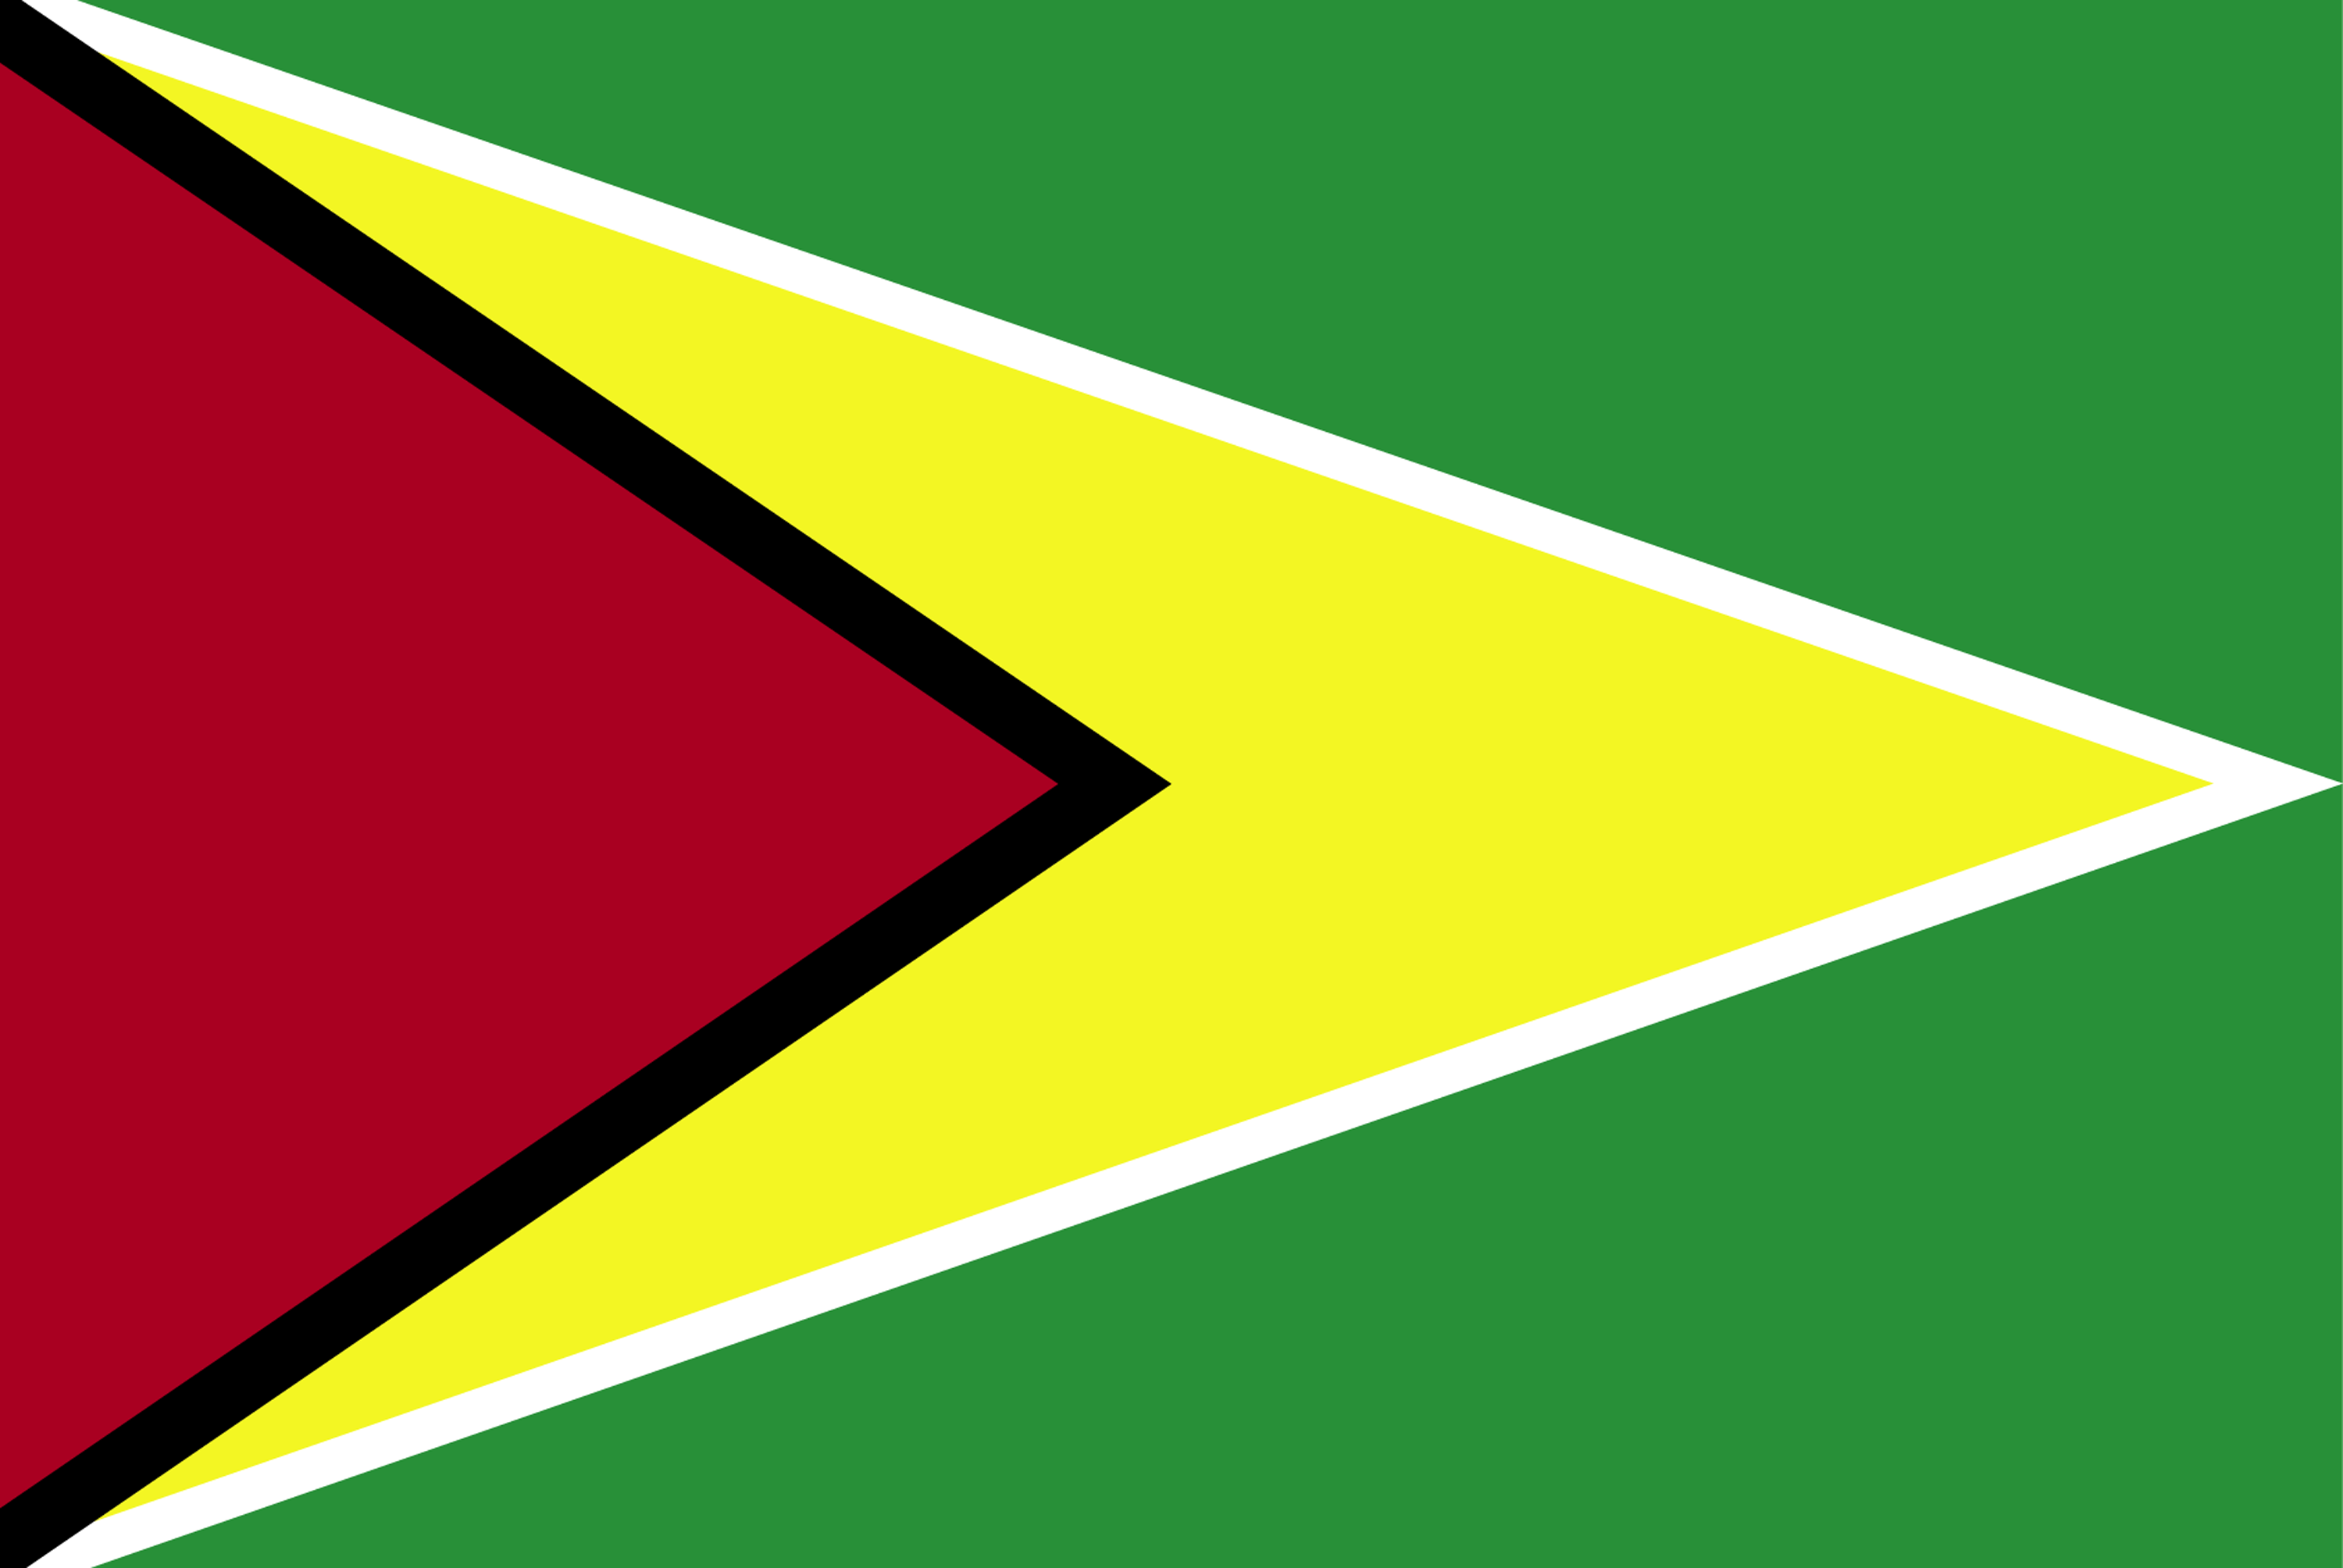 Flag Of Guyana 2009 Clipart Etc